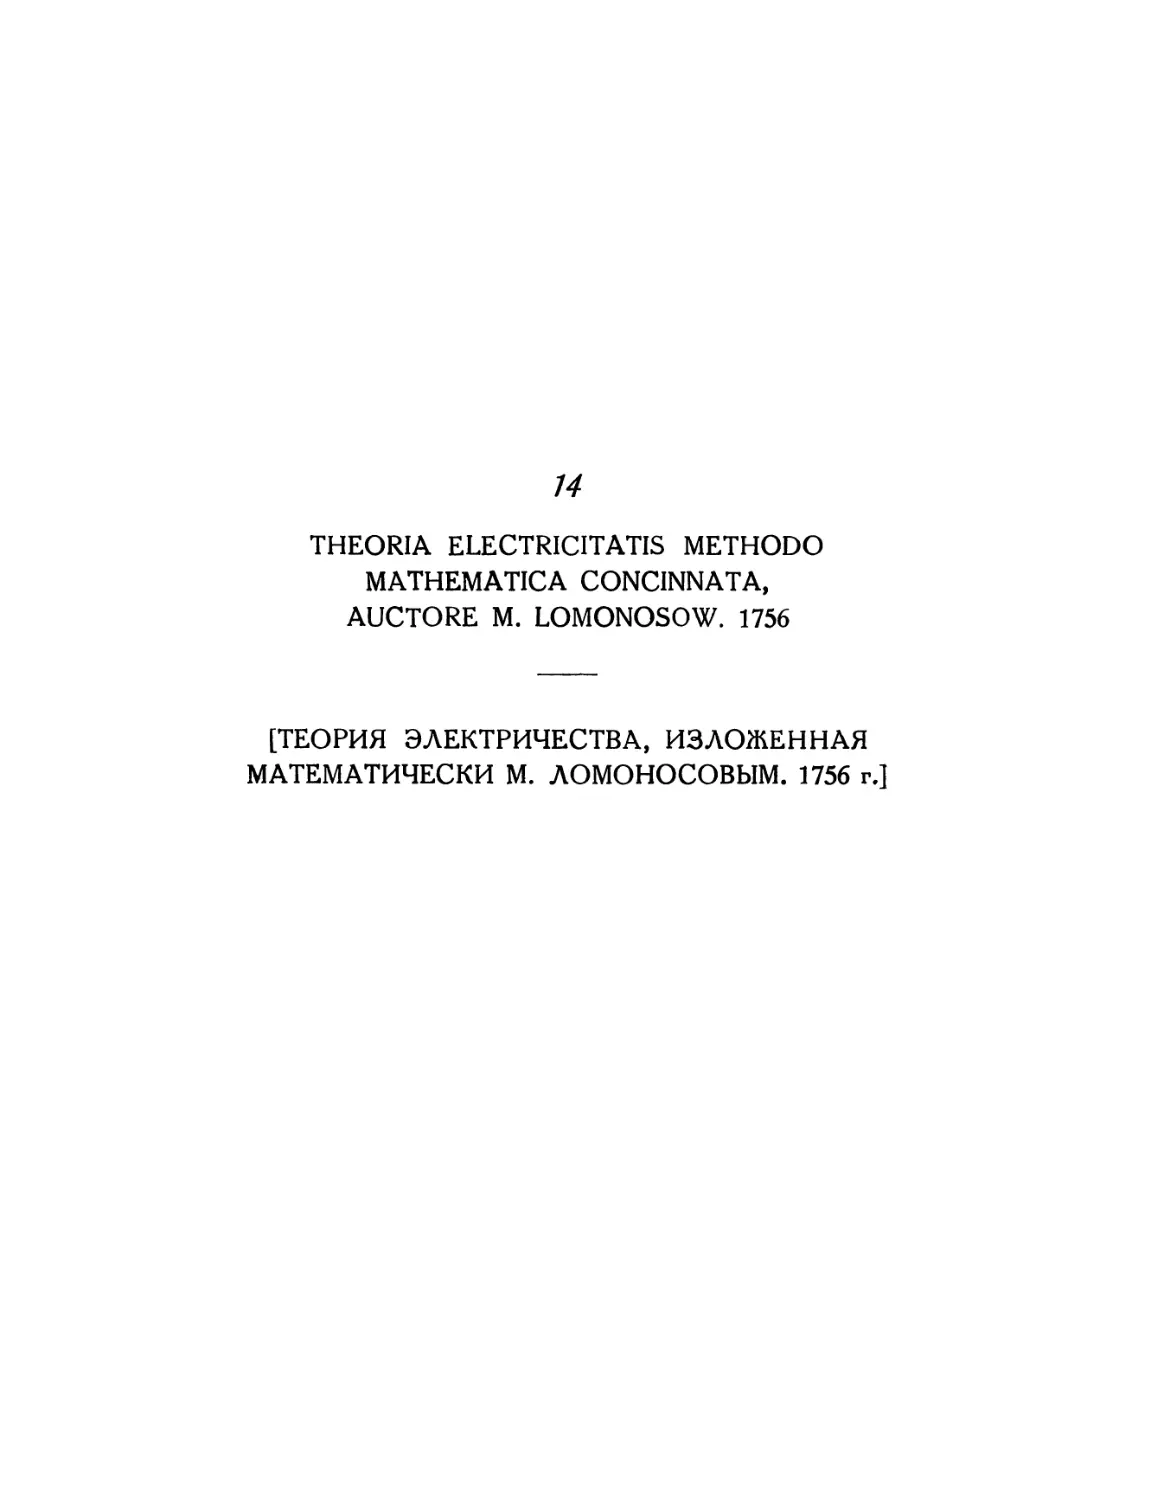 14. [Теория электричества, изложенная математически М. Ломоносовым. 1756. Перевод Я. М. Боровского]